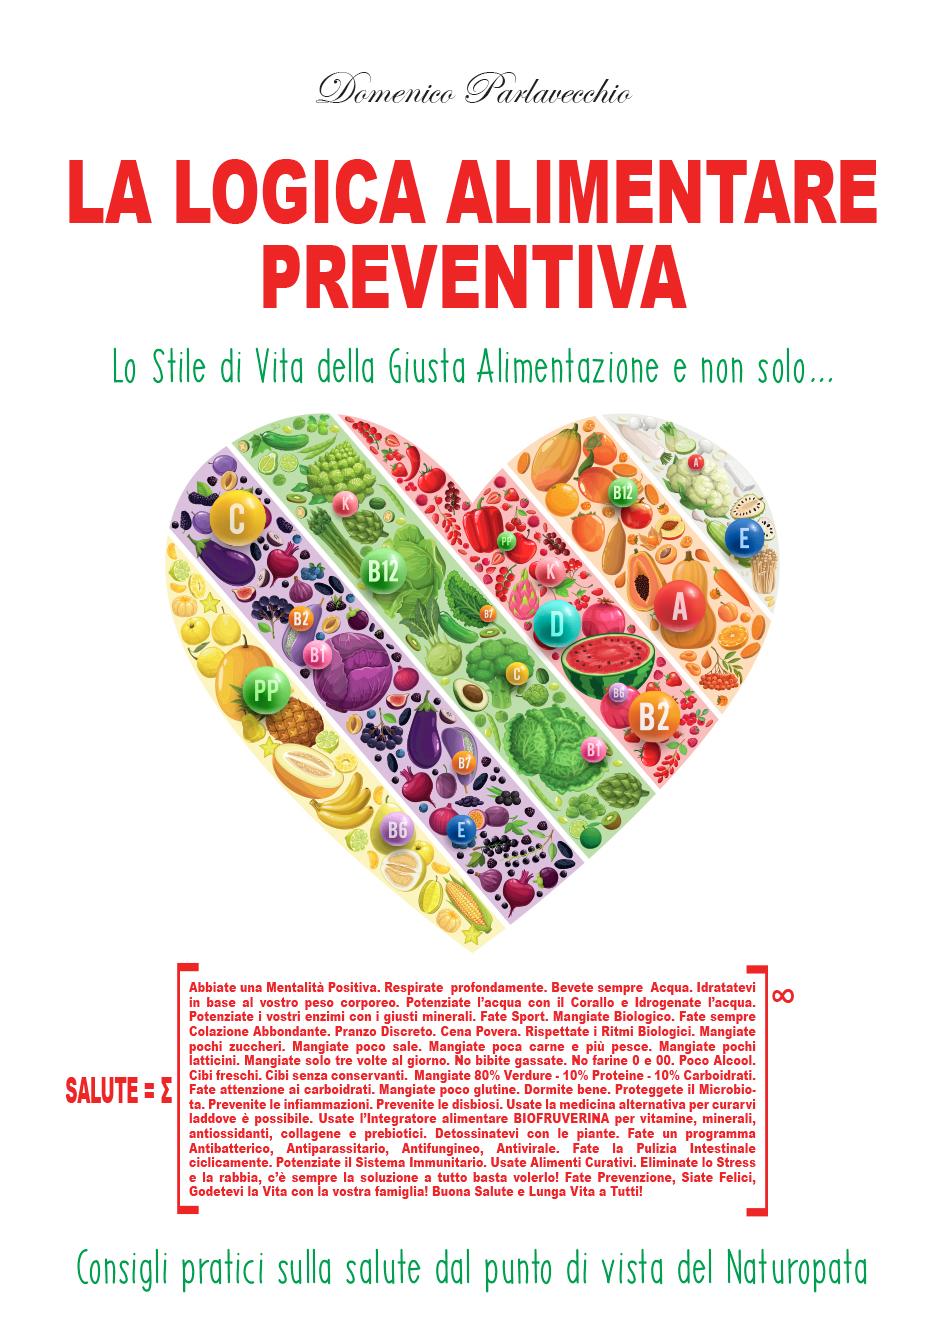 Il libro "La Logica Alimentare Preventiva". Promo: il costo dei primi 100 libri invece di 25€ è 20€